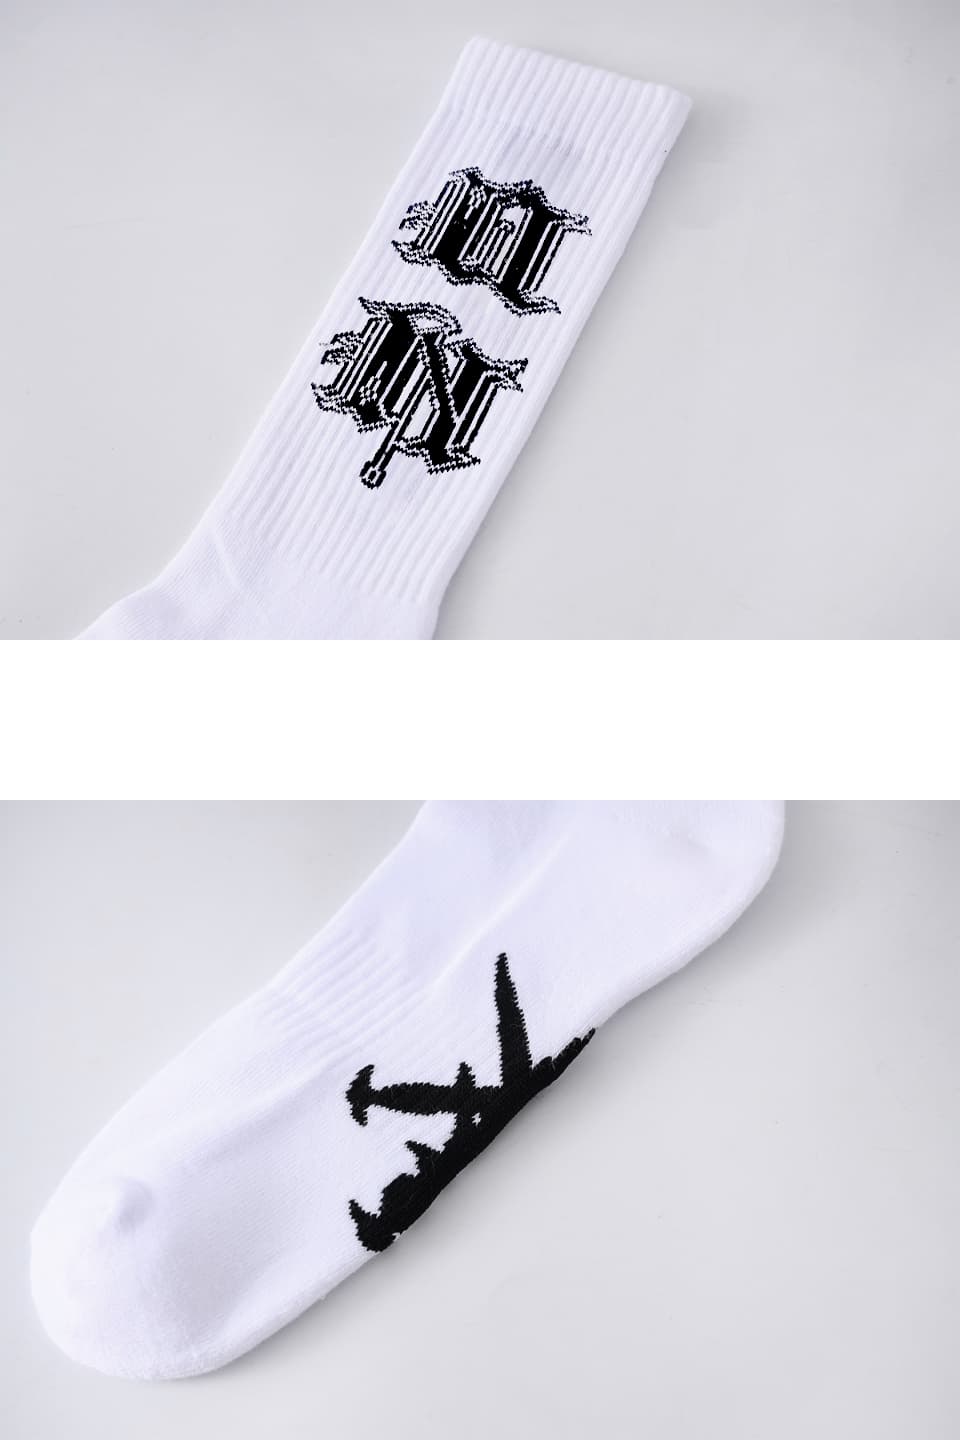 Gothic "U&N" Knit Socks